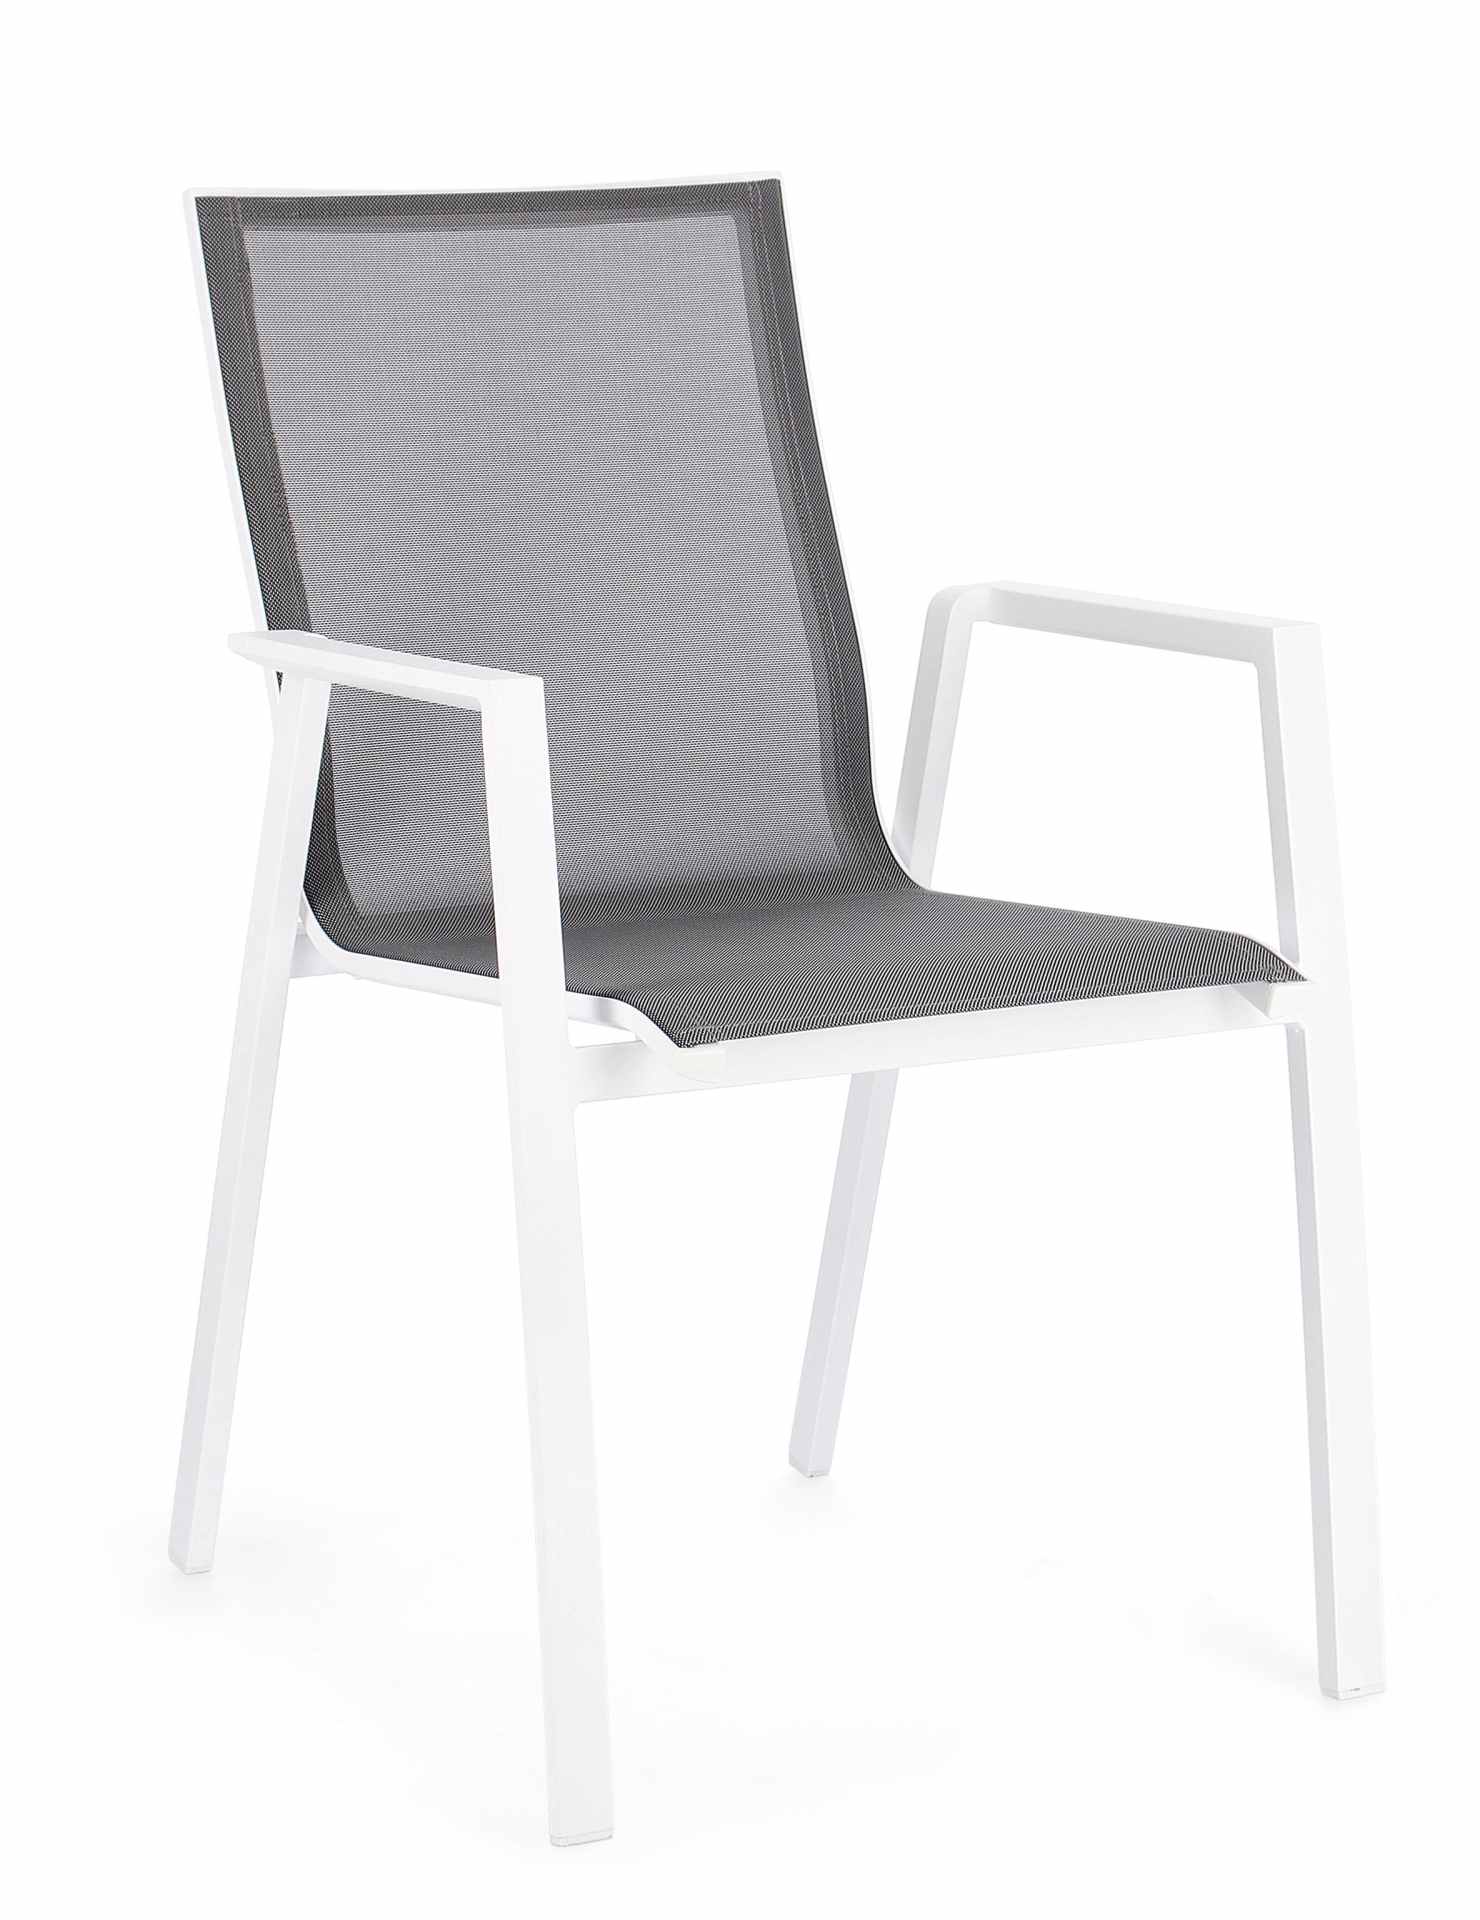 Der Gartenstuhl Krion überzeugt mit seinem modernen Design. Gefertigt wurde er aus Textilene, welche einen grauen Farbton besitzt. Das Gestell ist aus Aluminium und hat auch eine weiße Farbe. Der Stuhl verfügt über eine Sitzhöhe von 45 cm und ist für den 